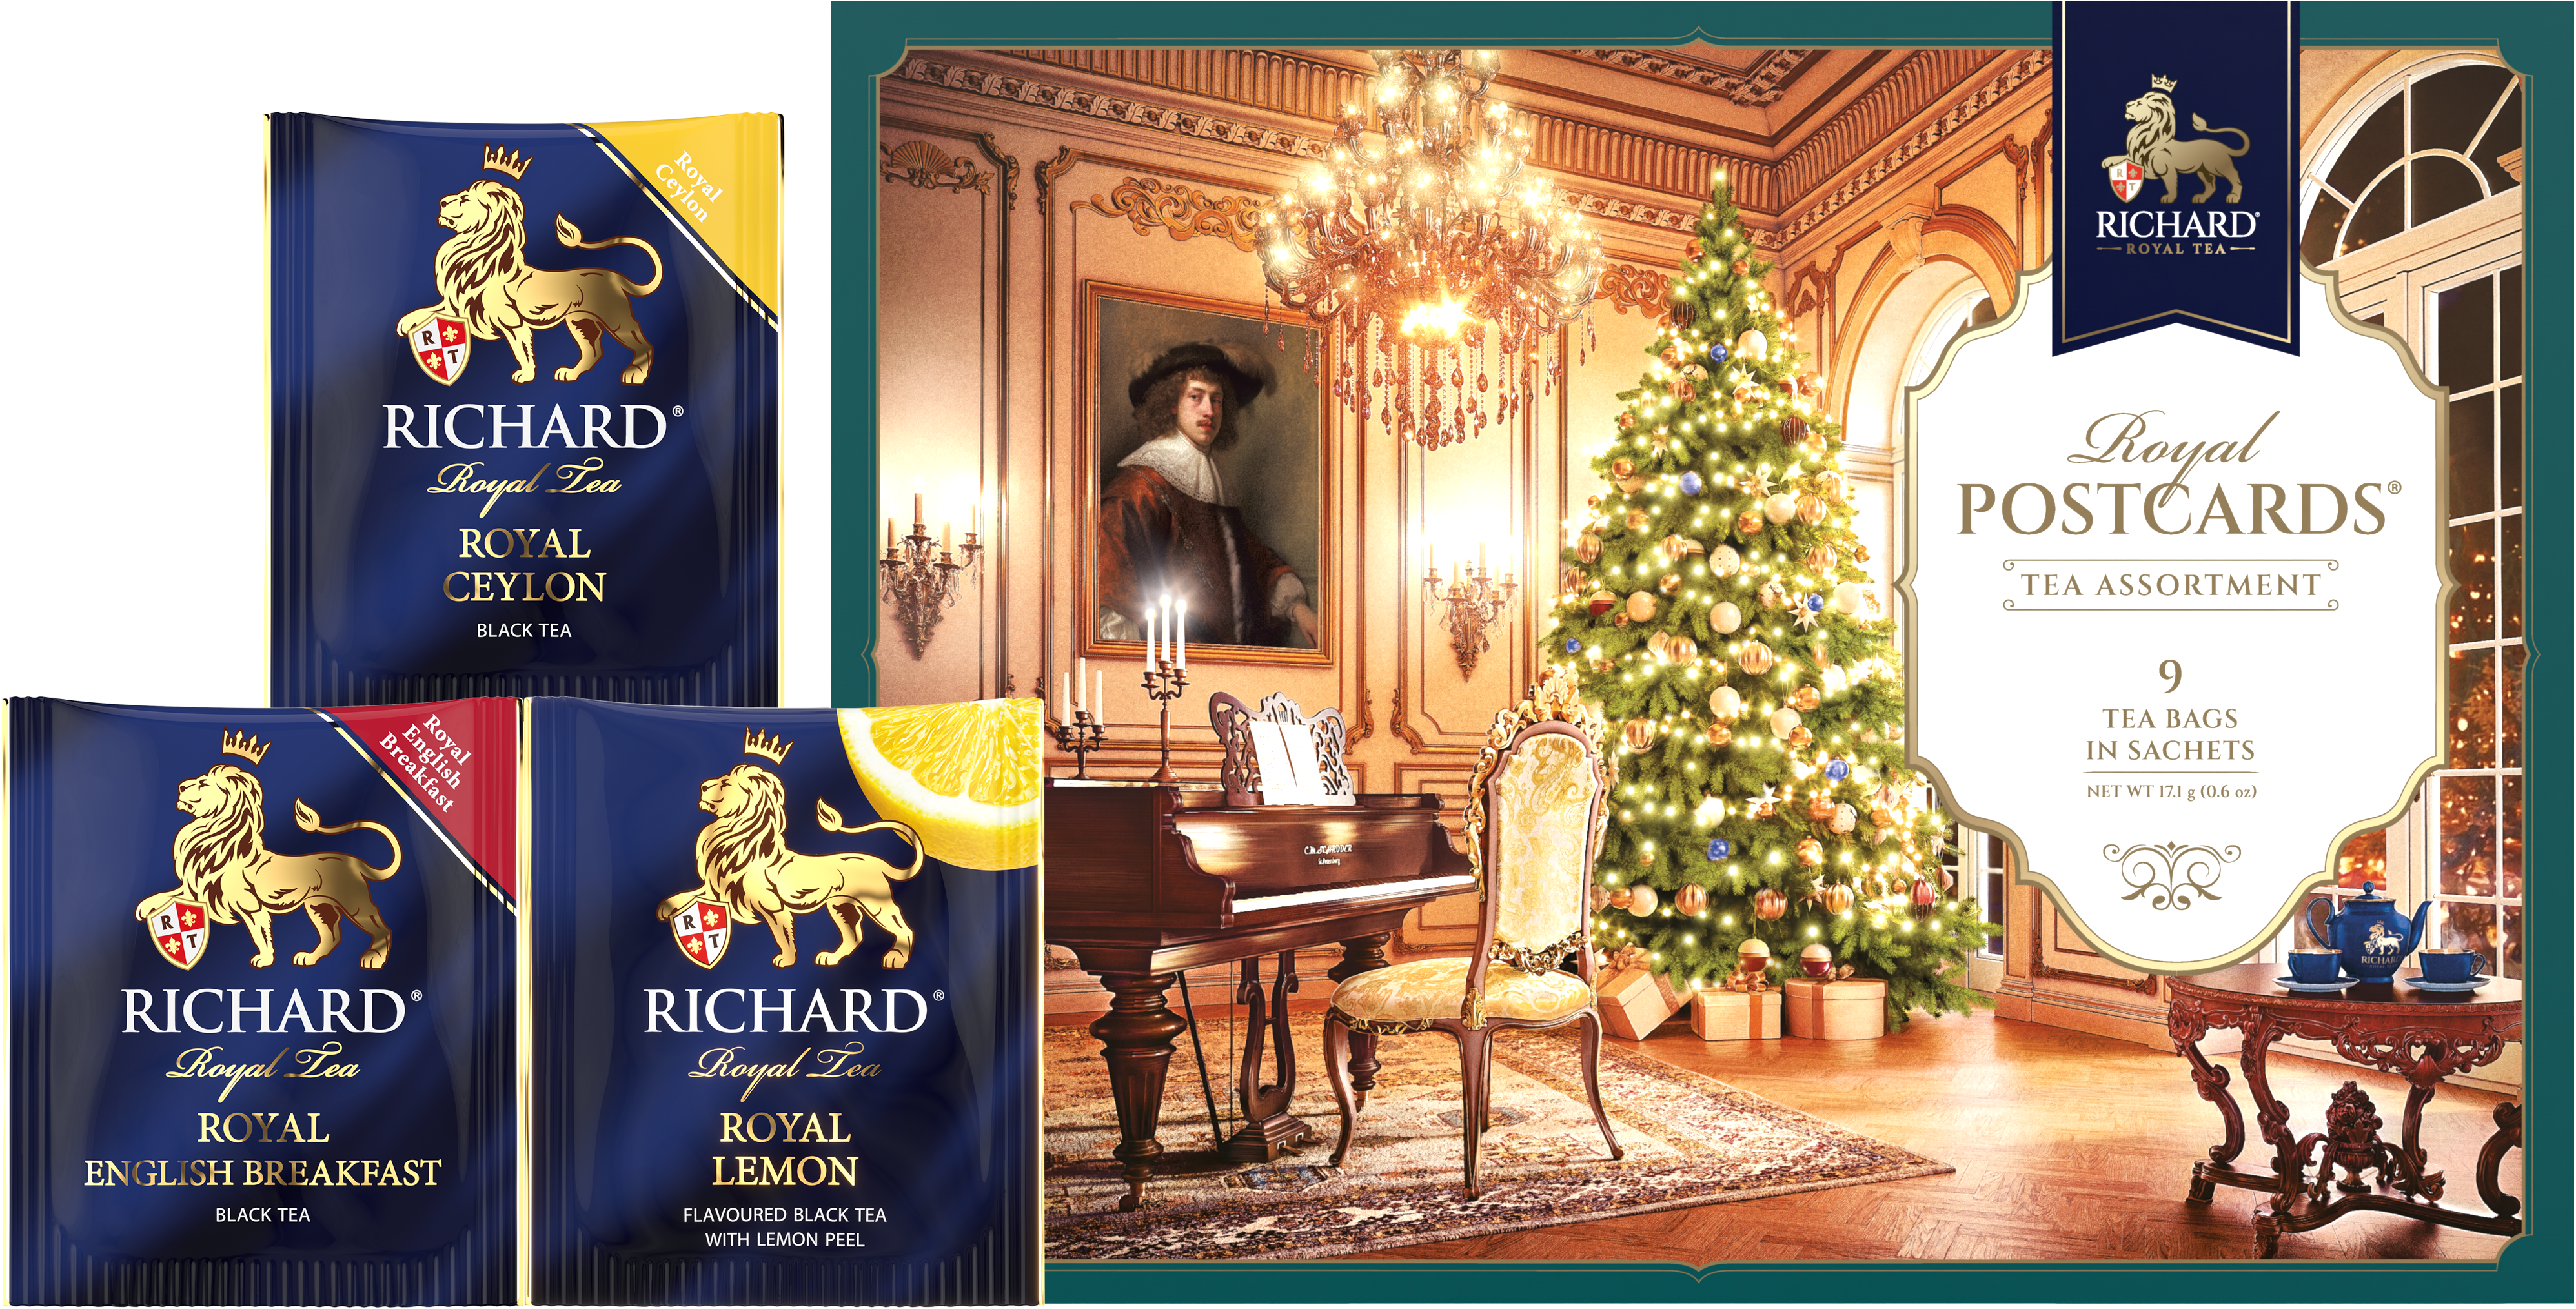 Richard Royal Királyi Képeslap, Karácsonyi válogatás - Zöld, filteres fekete tea-válogatás, 17,1g